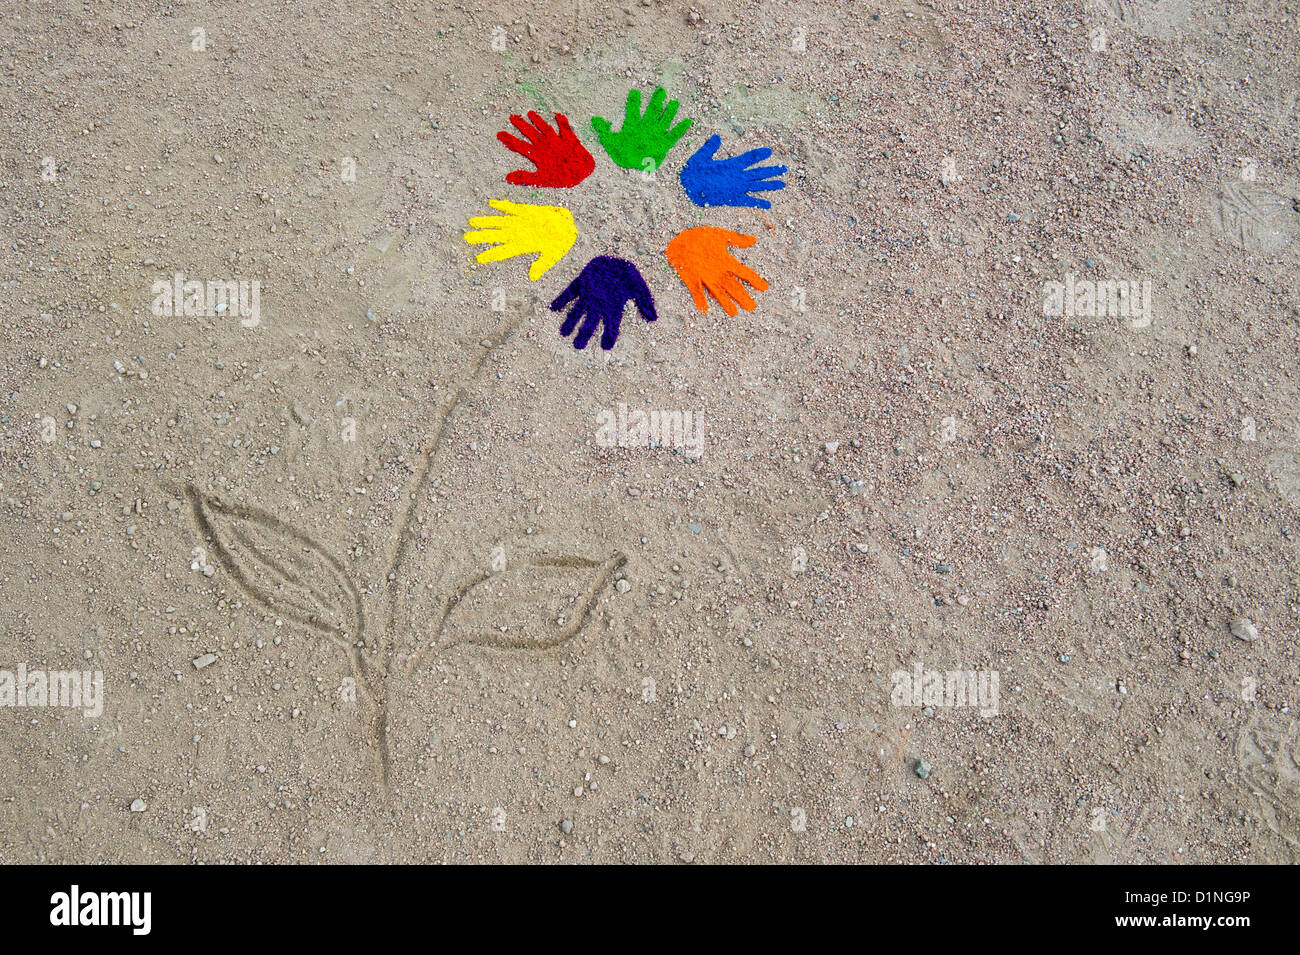 Polvere colorata stampe a mano in un modello circolare realizzato in un fiore su una pista sterrata Foto Stock